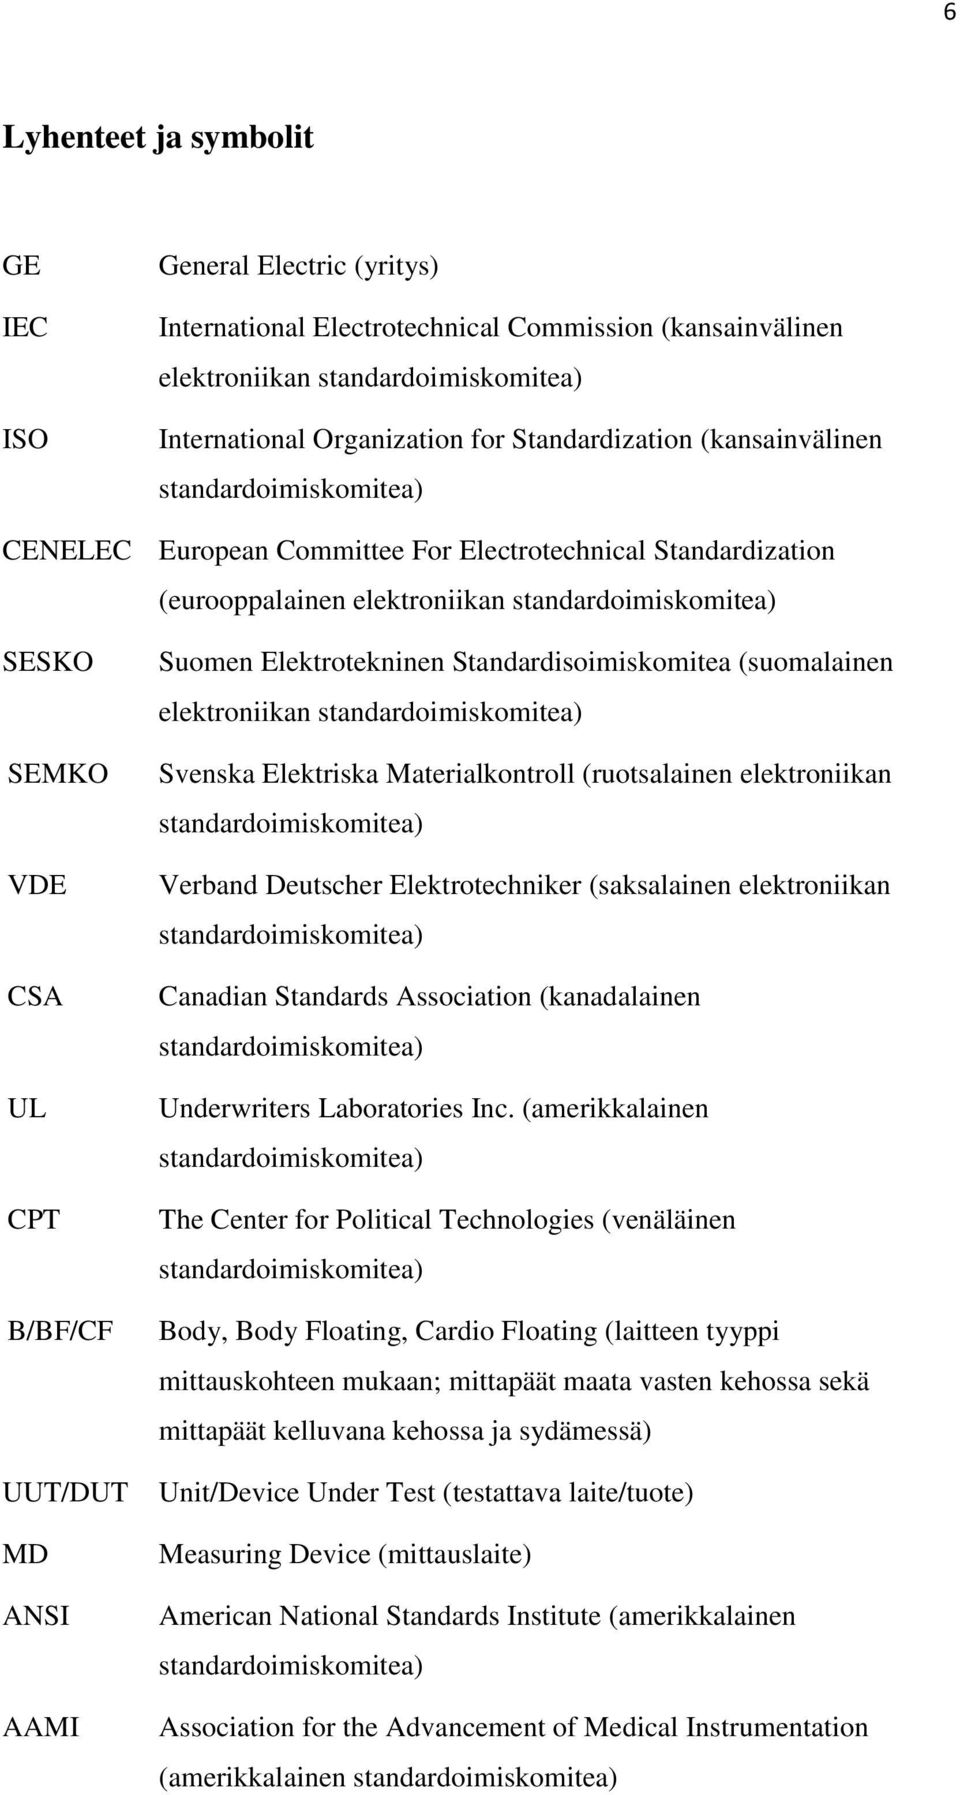 B/BF/CF UUT/DUT MD ANSI AAMI Suomen Elektrotekninen Standardisoimiskomitea (suomalainen elektroniikan standardoimiskomitea) Svenska Elektriska Materialkontroll (ruotsalainen elektroniikan